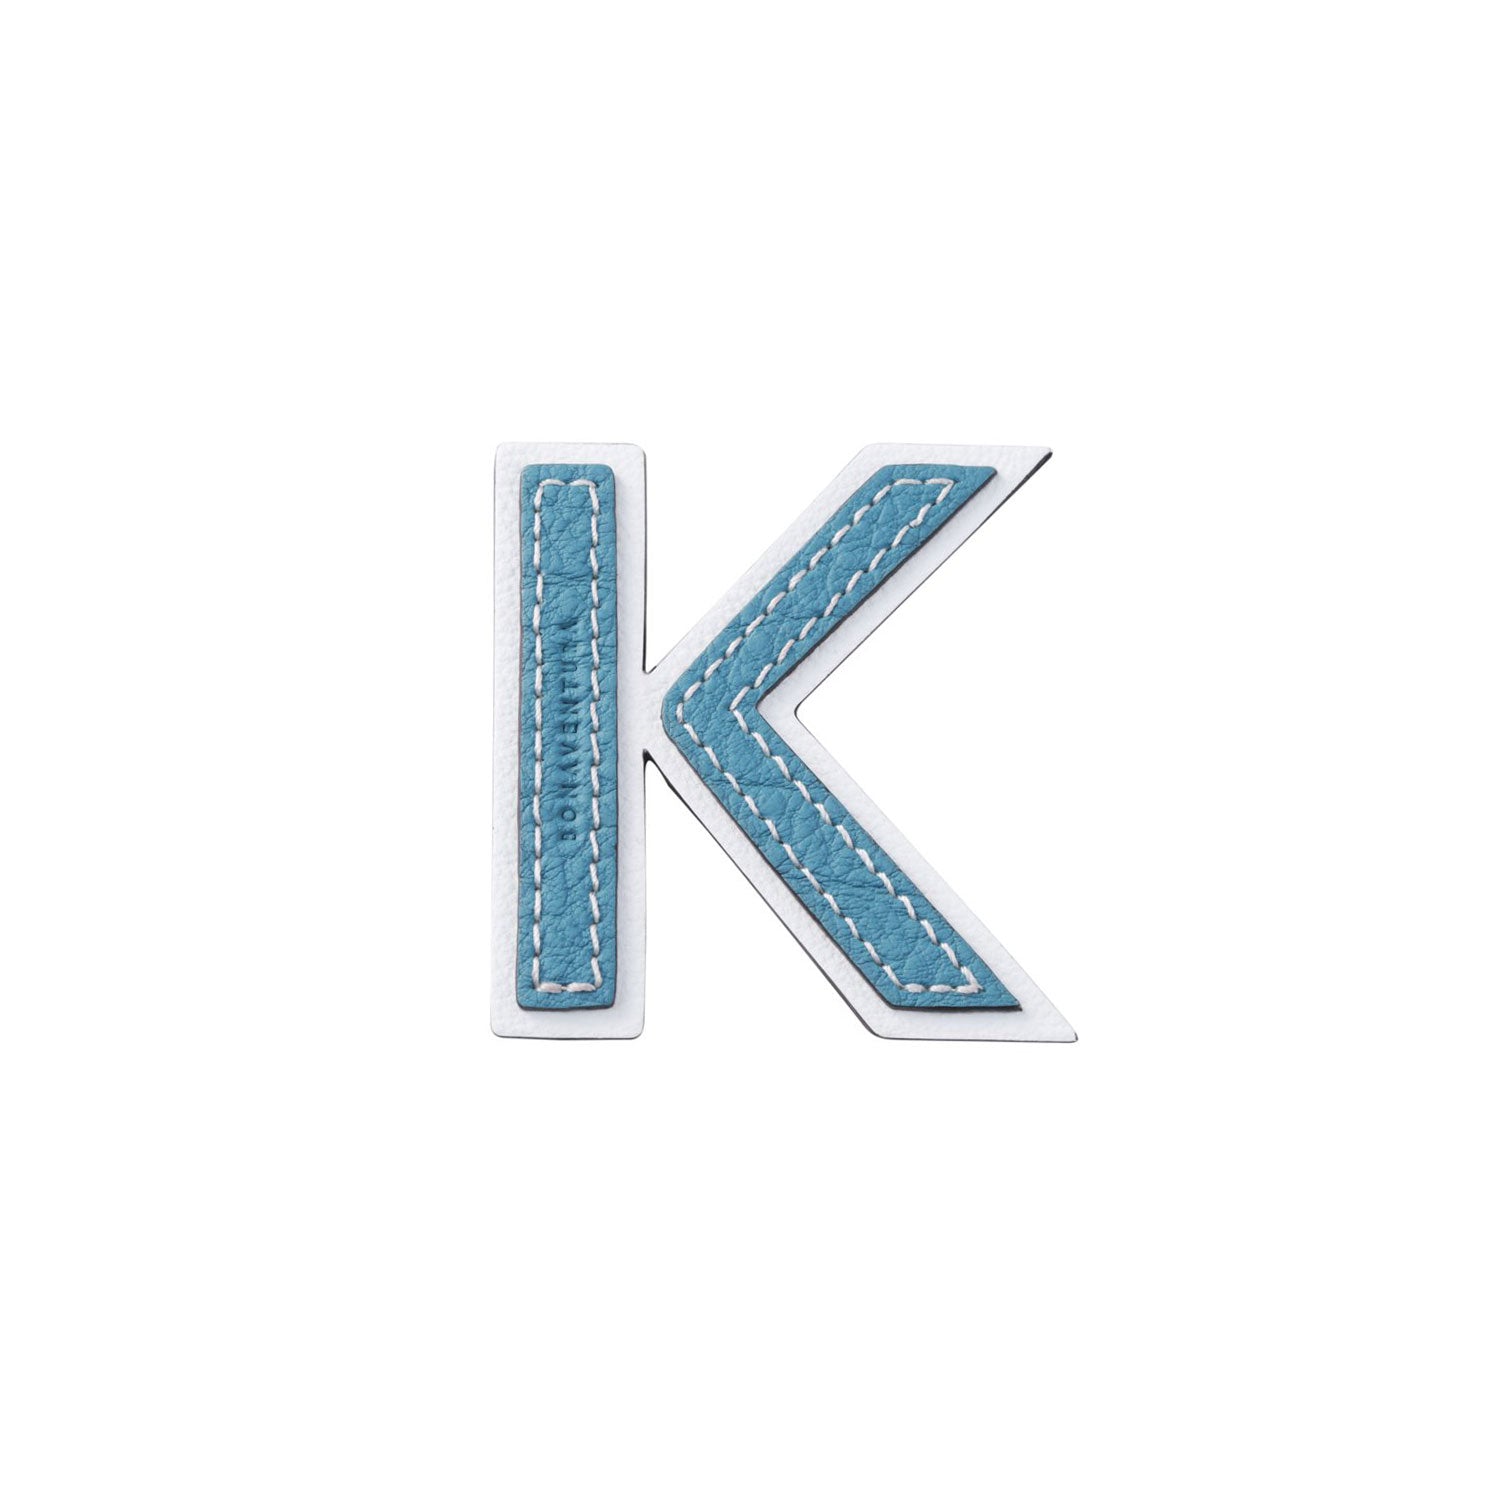 Initial letter -K